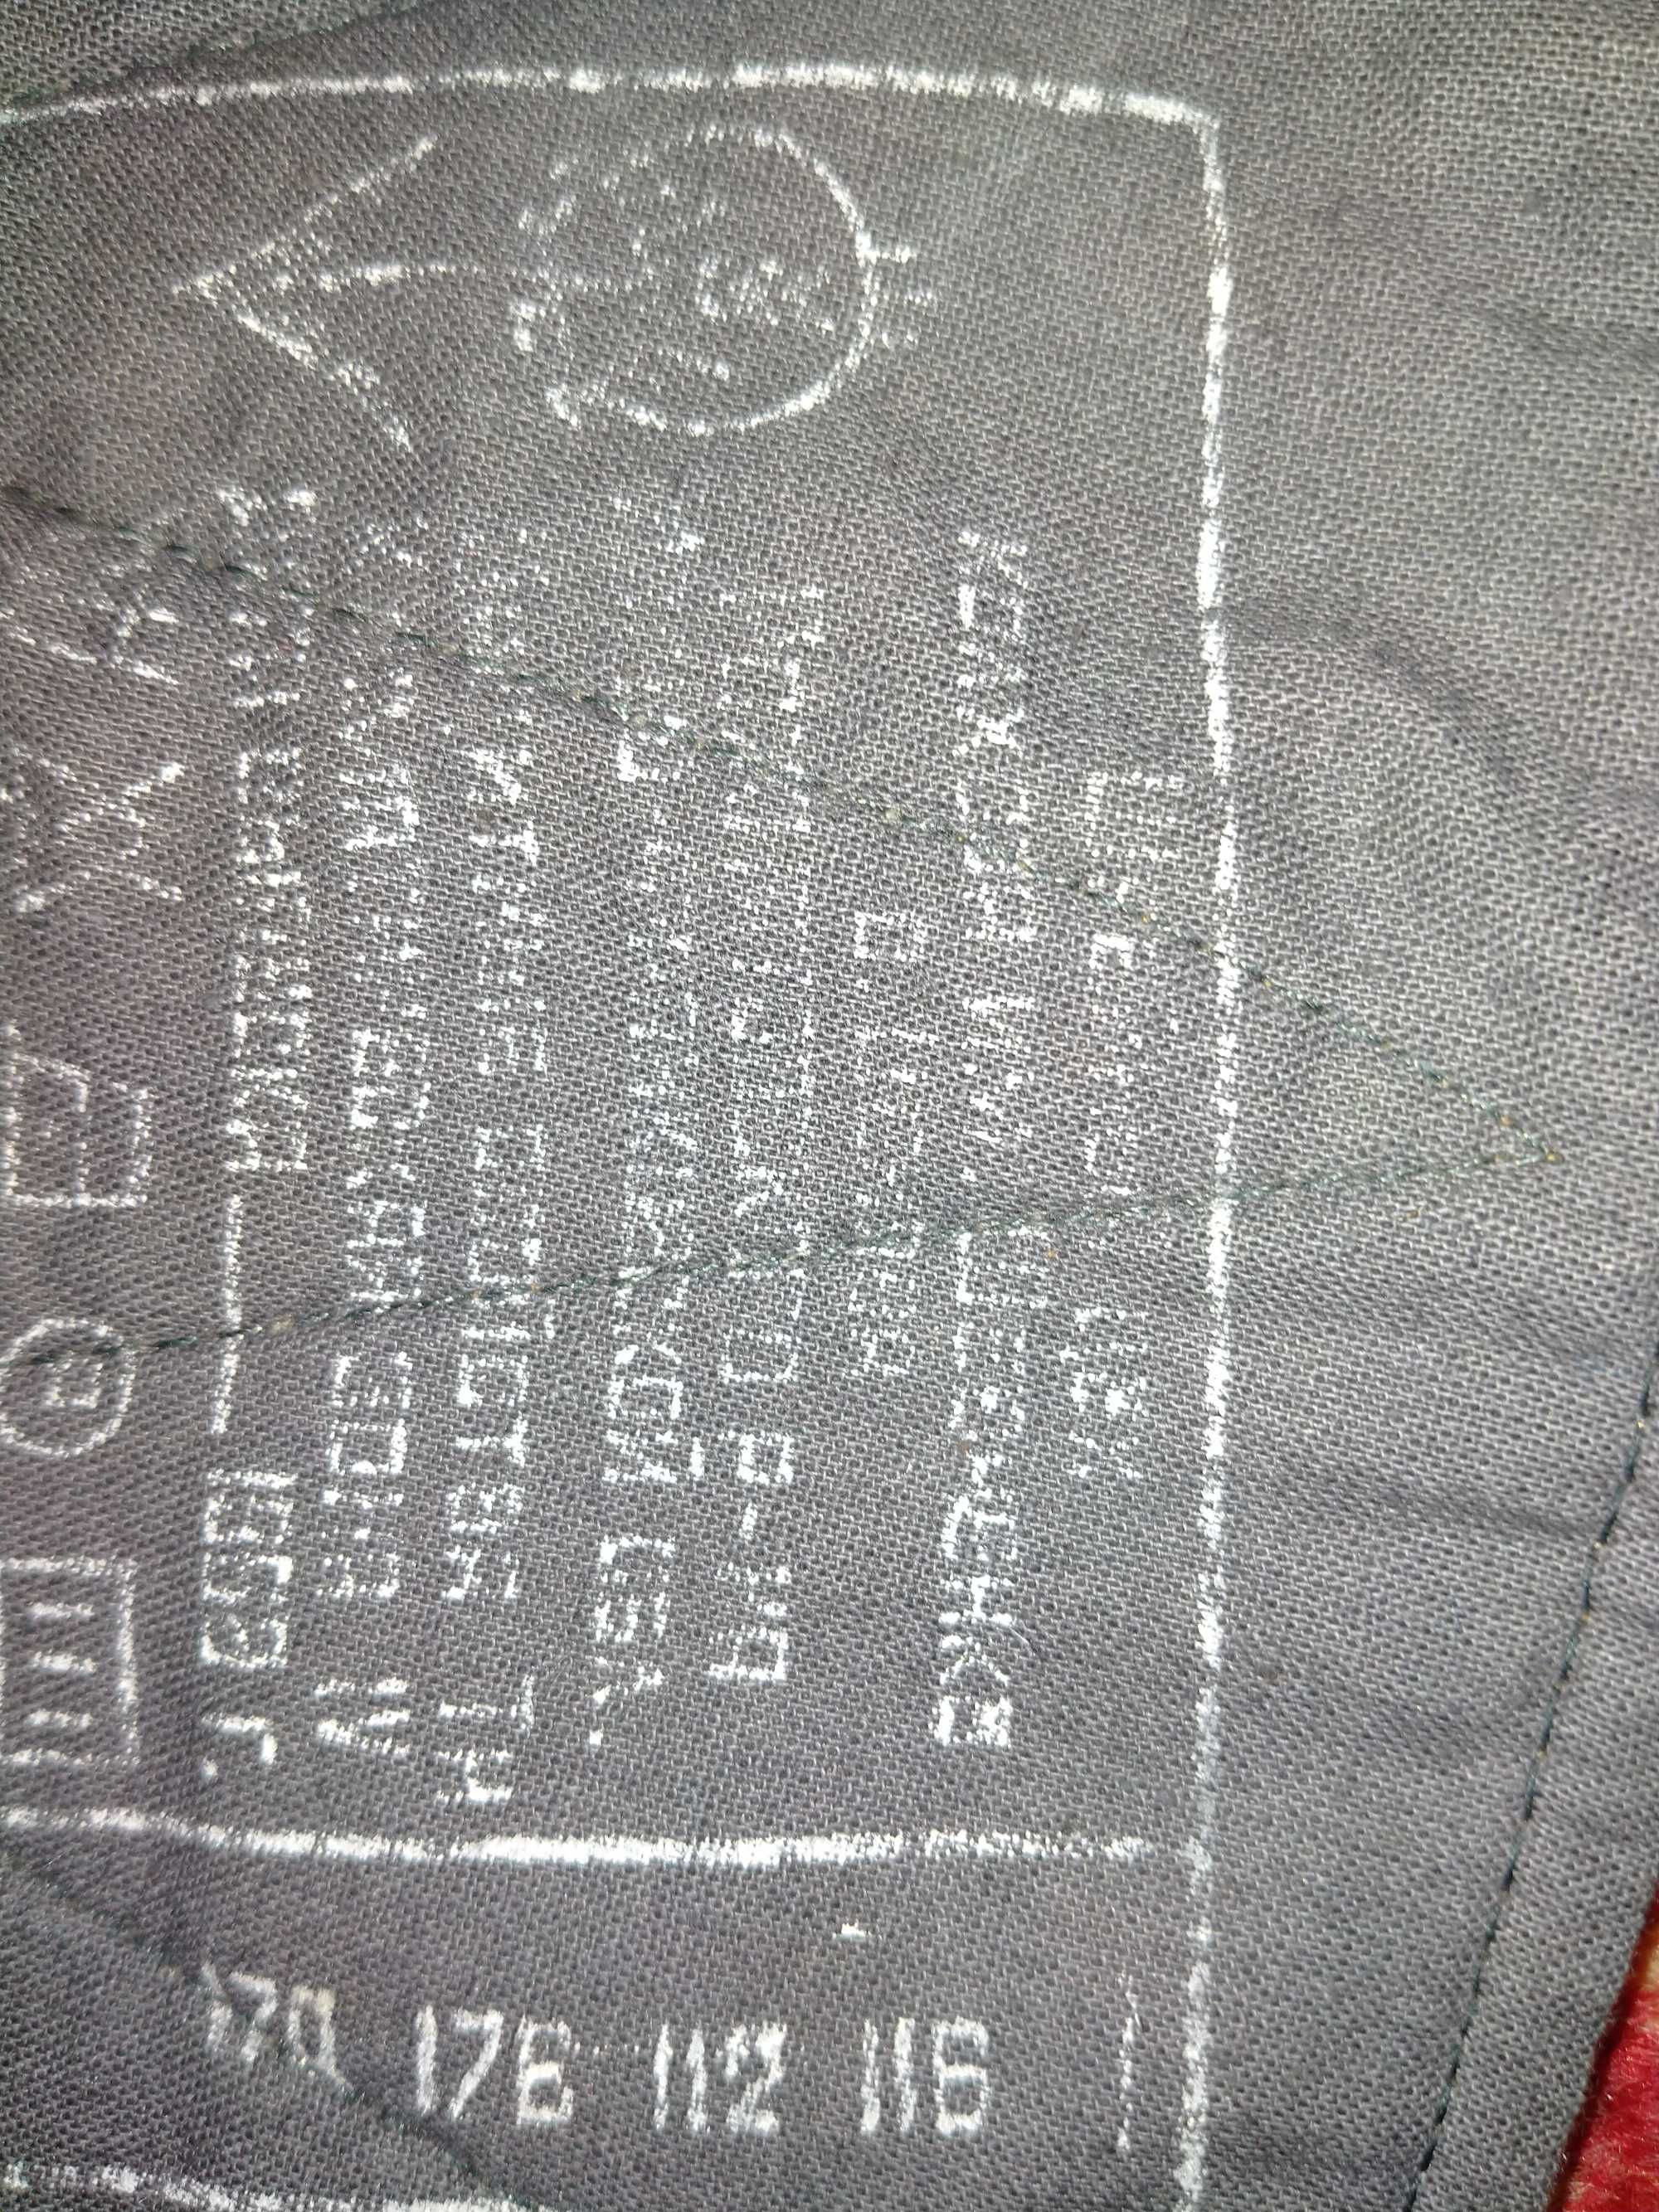 Продам штаны ватные .Производство СССР